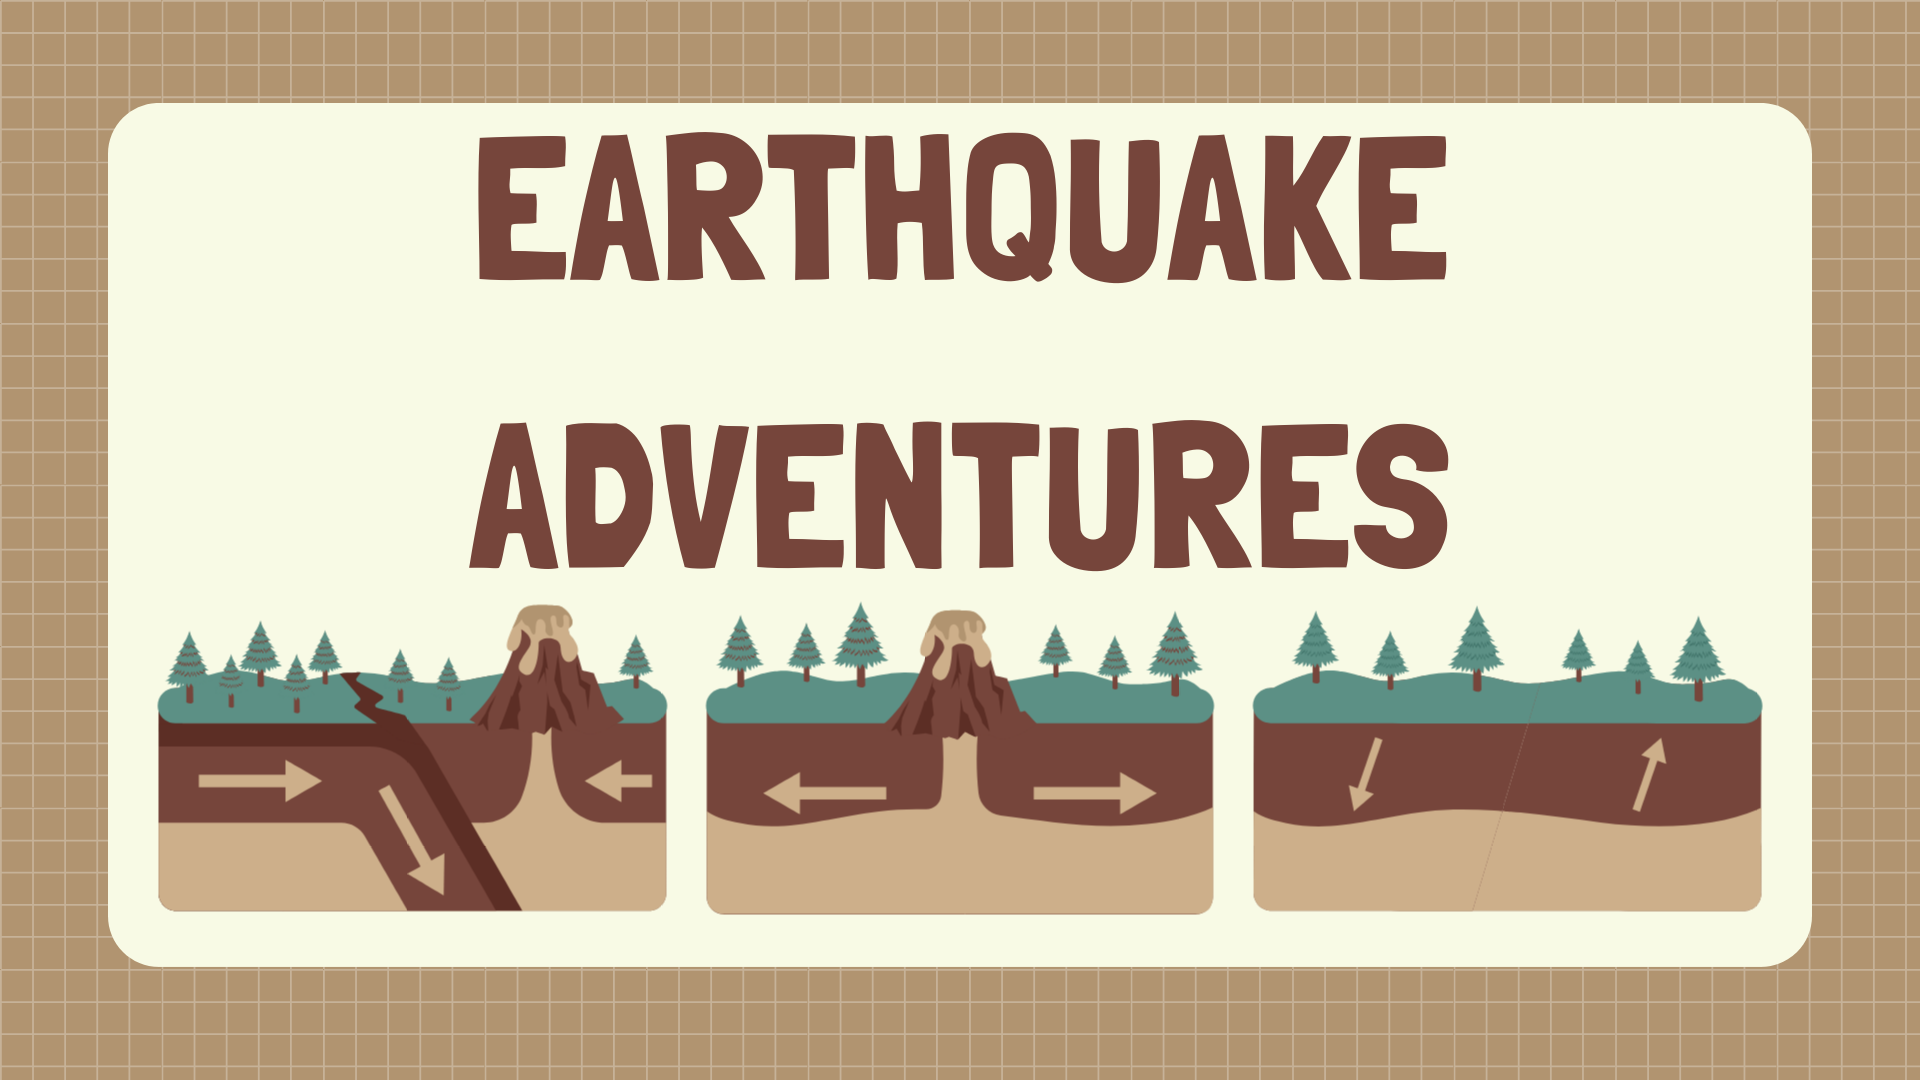 Earthquake adventures program cover